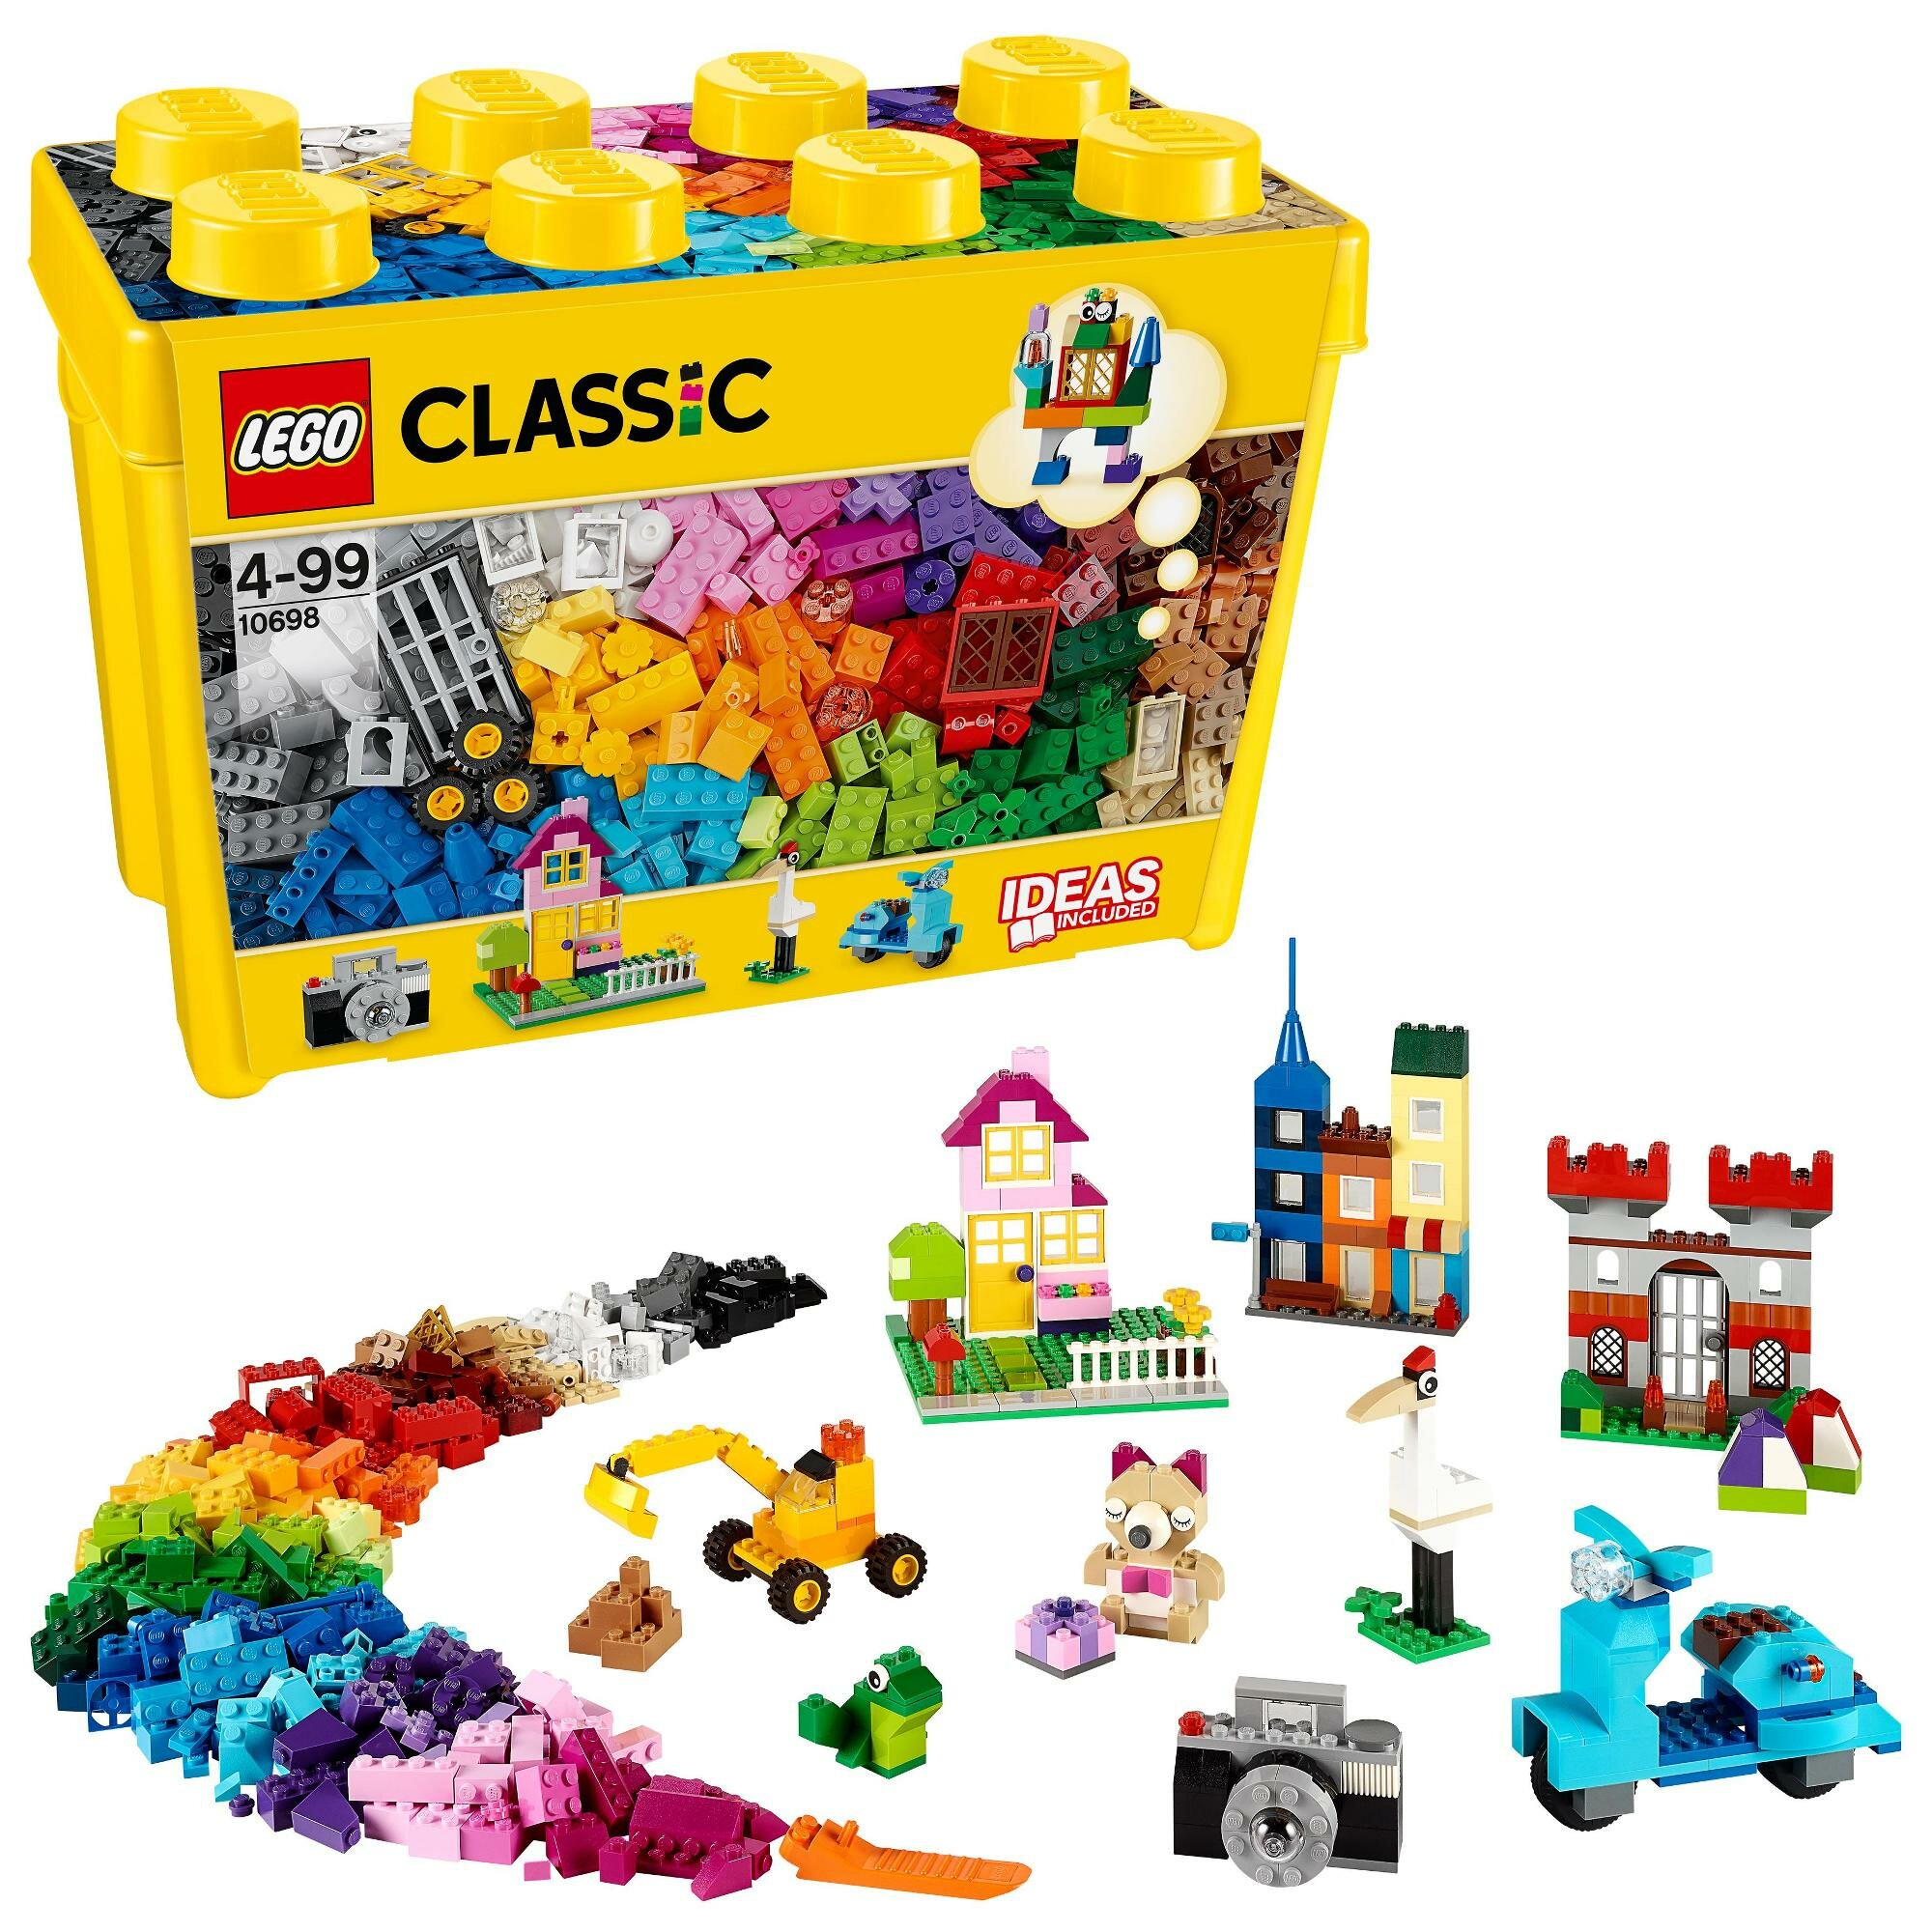 Overskæg overskud her LEGO Classic Kreatywne klocki LEGO 10698 - niskie ceny i opinie w Media  Expert